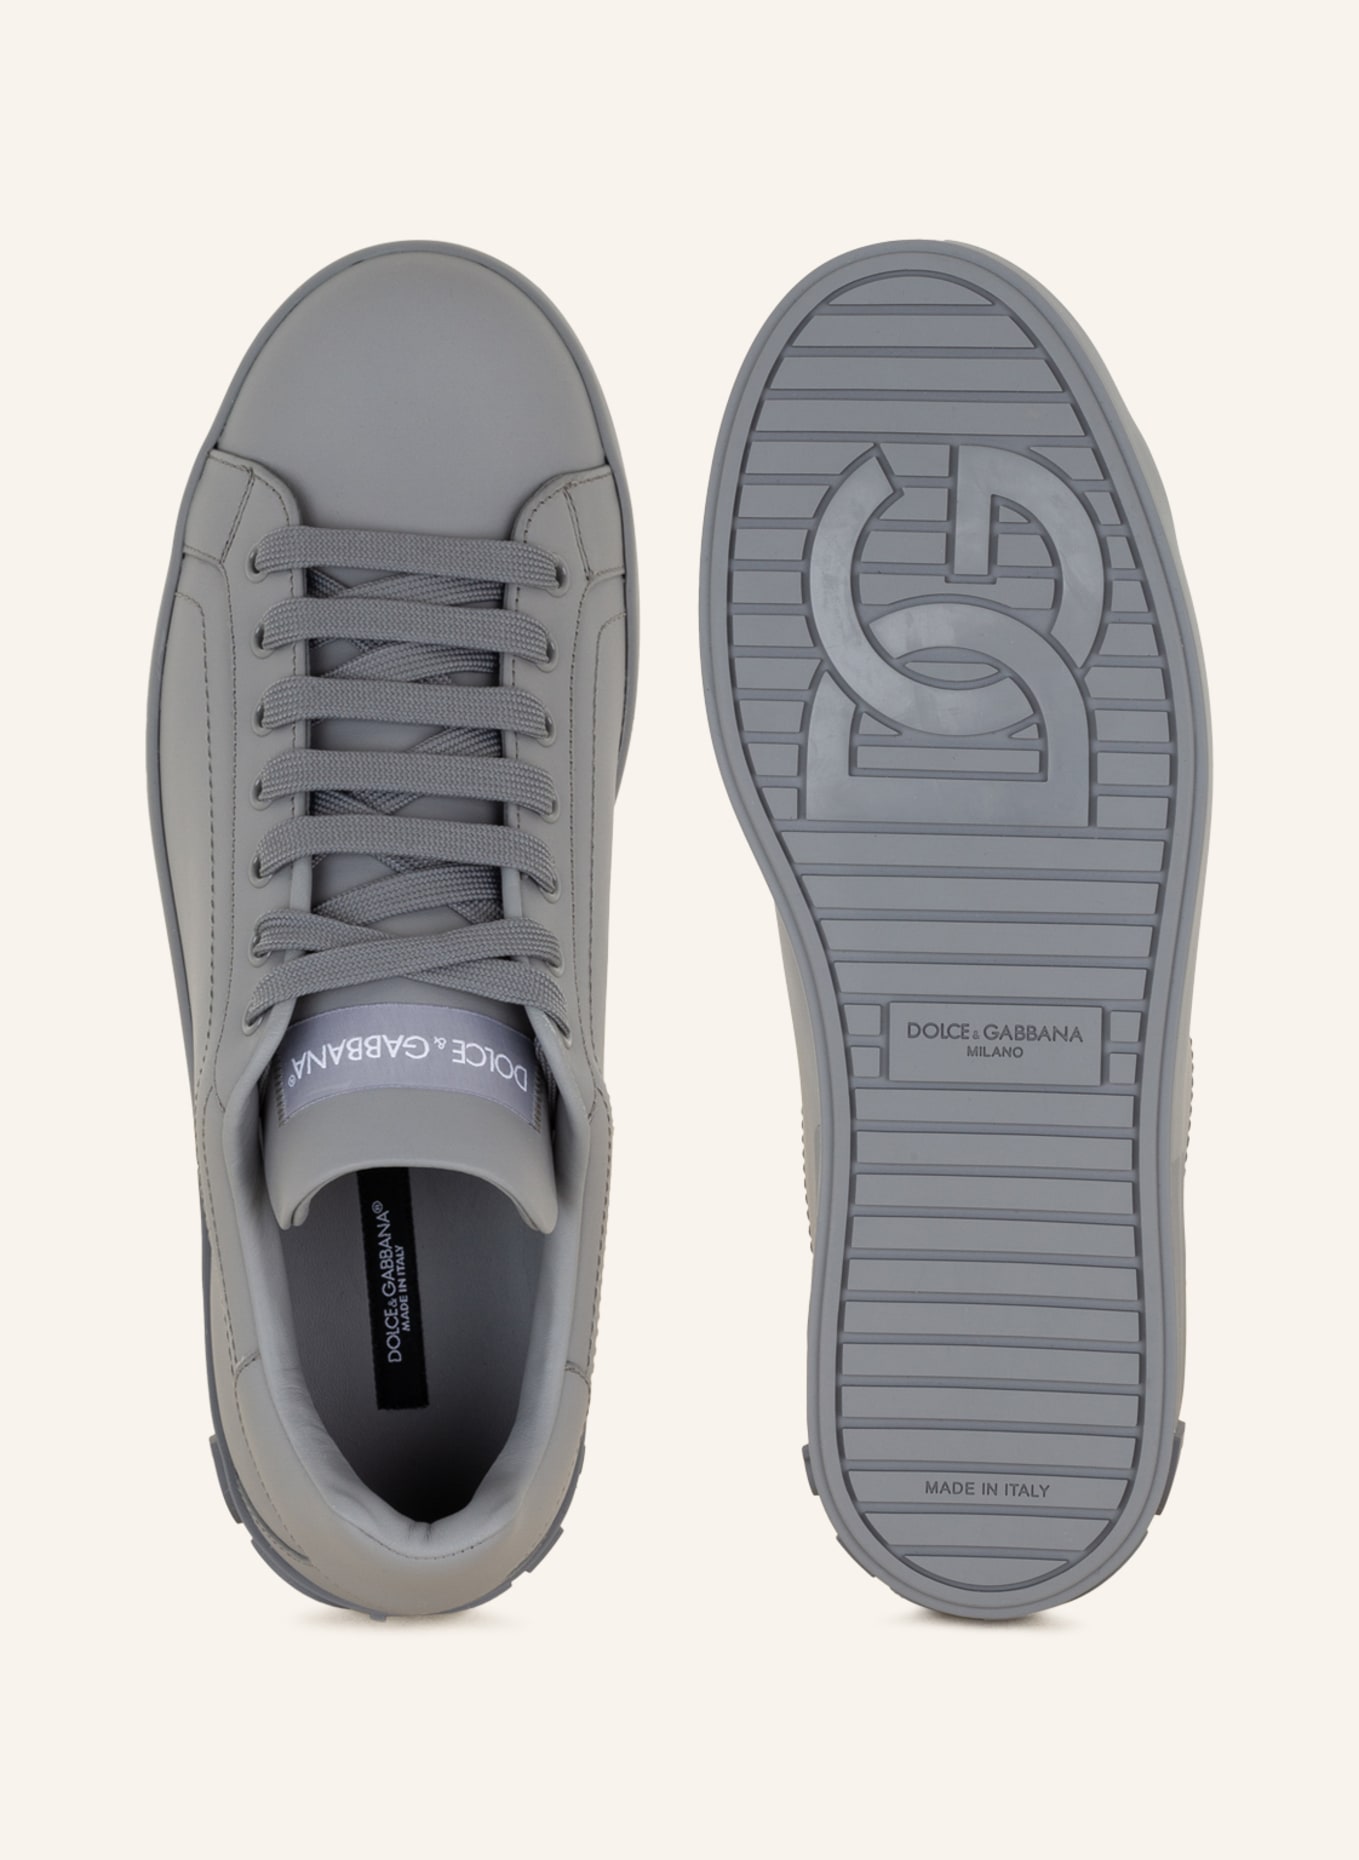 DOLCE & GABBANA Sneakers PORTOFINO, Color: GRAY (Image 5)